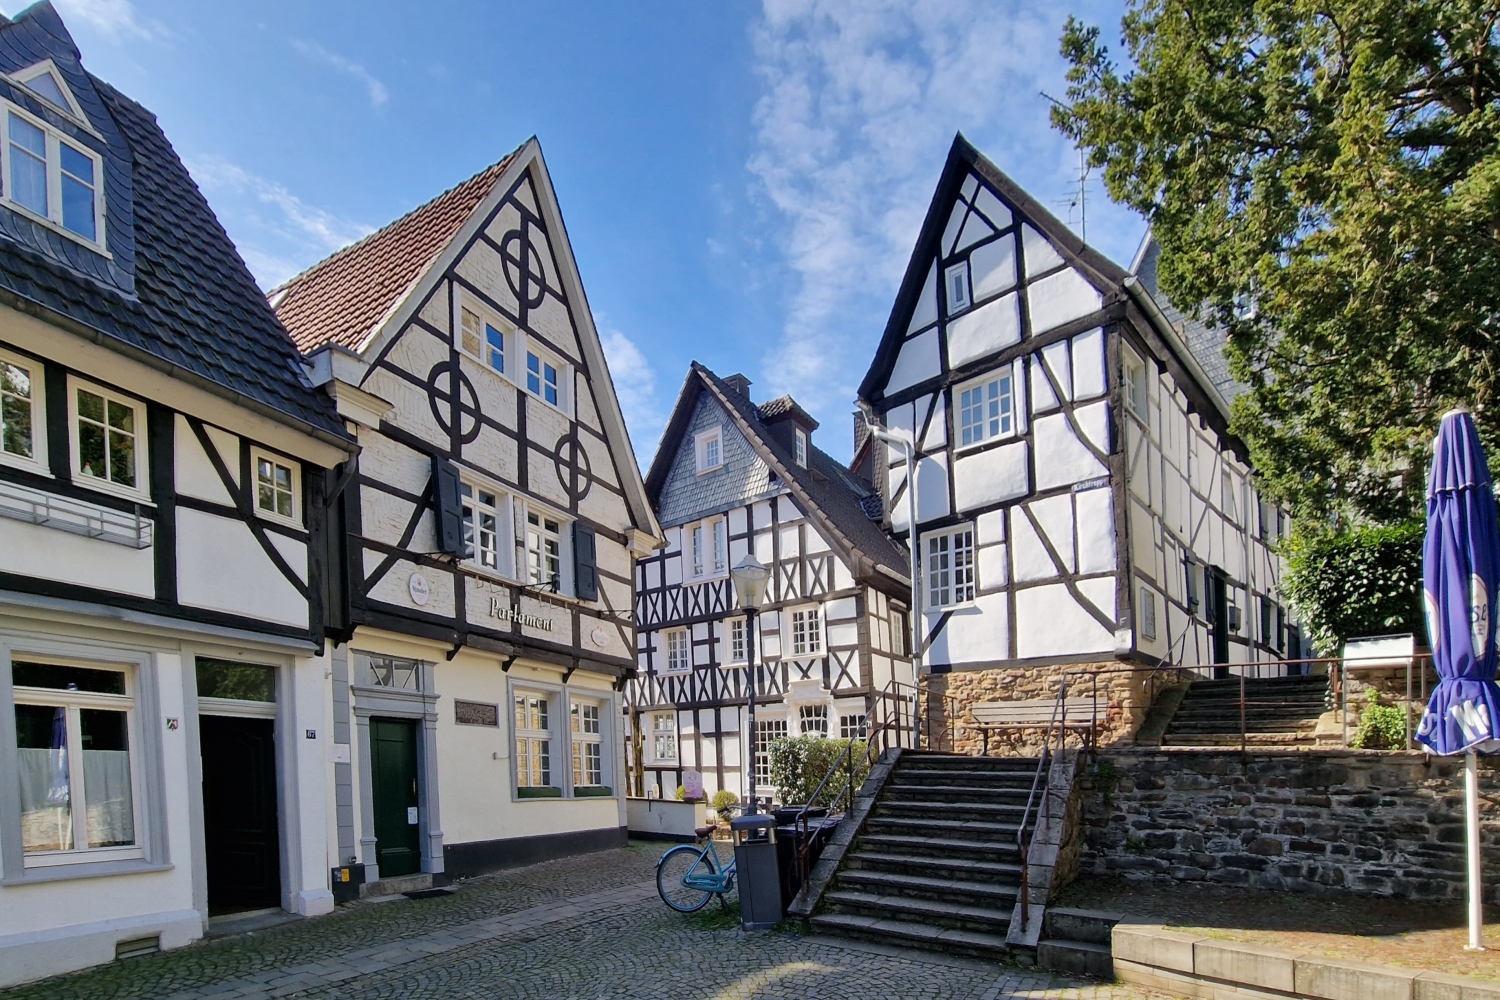 490m² großes historisches Fachwerkhaus mit Ruhrblick in der Kettwiger Altstadt